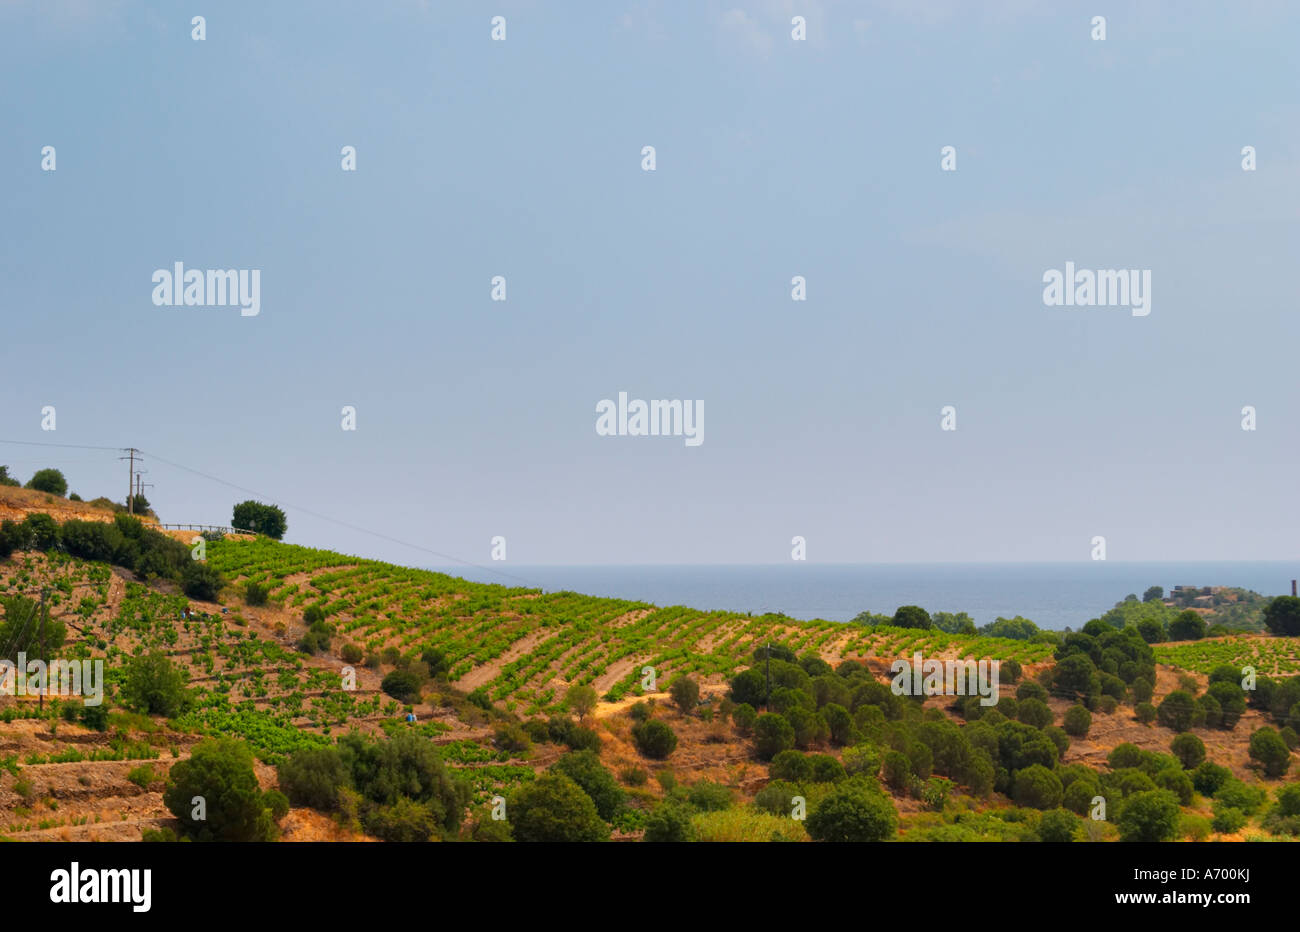 Domaine Coume del Mas. Banyuls-sur-Mer. Roussillon. Vignes au début de l'été soleil avec des vignes en gobelet traditionnel. La France. L'Europe. Vignoble. Banque D'Images